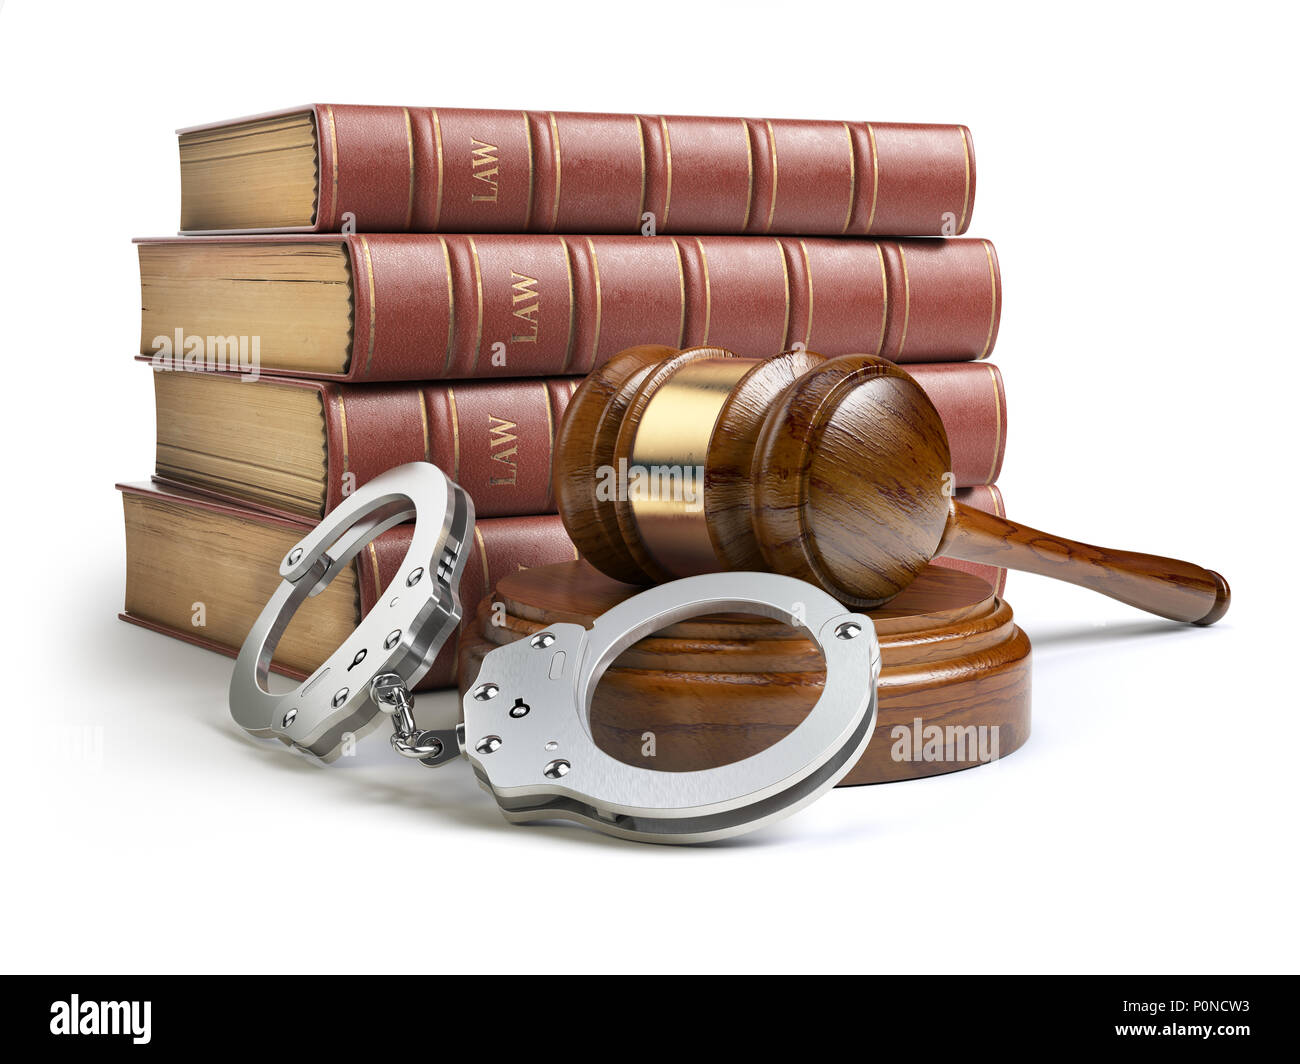 Marteau et juge avec menottes livre juridique isolé sur fond blanc. Concept du droit et de la justice. 3d illustration Banque D'Images